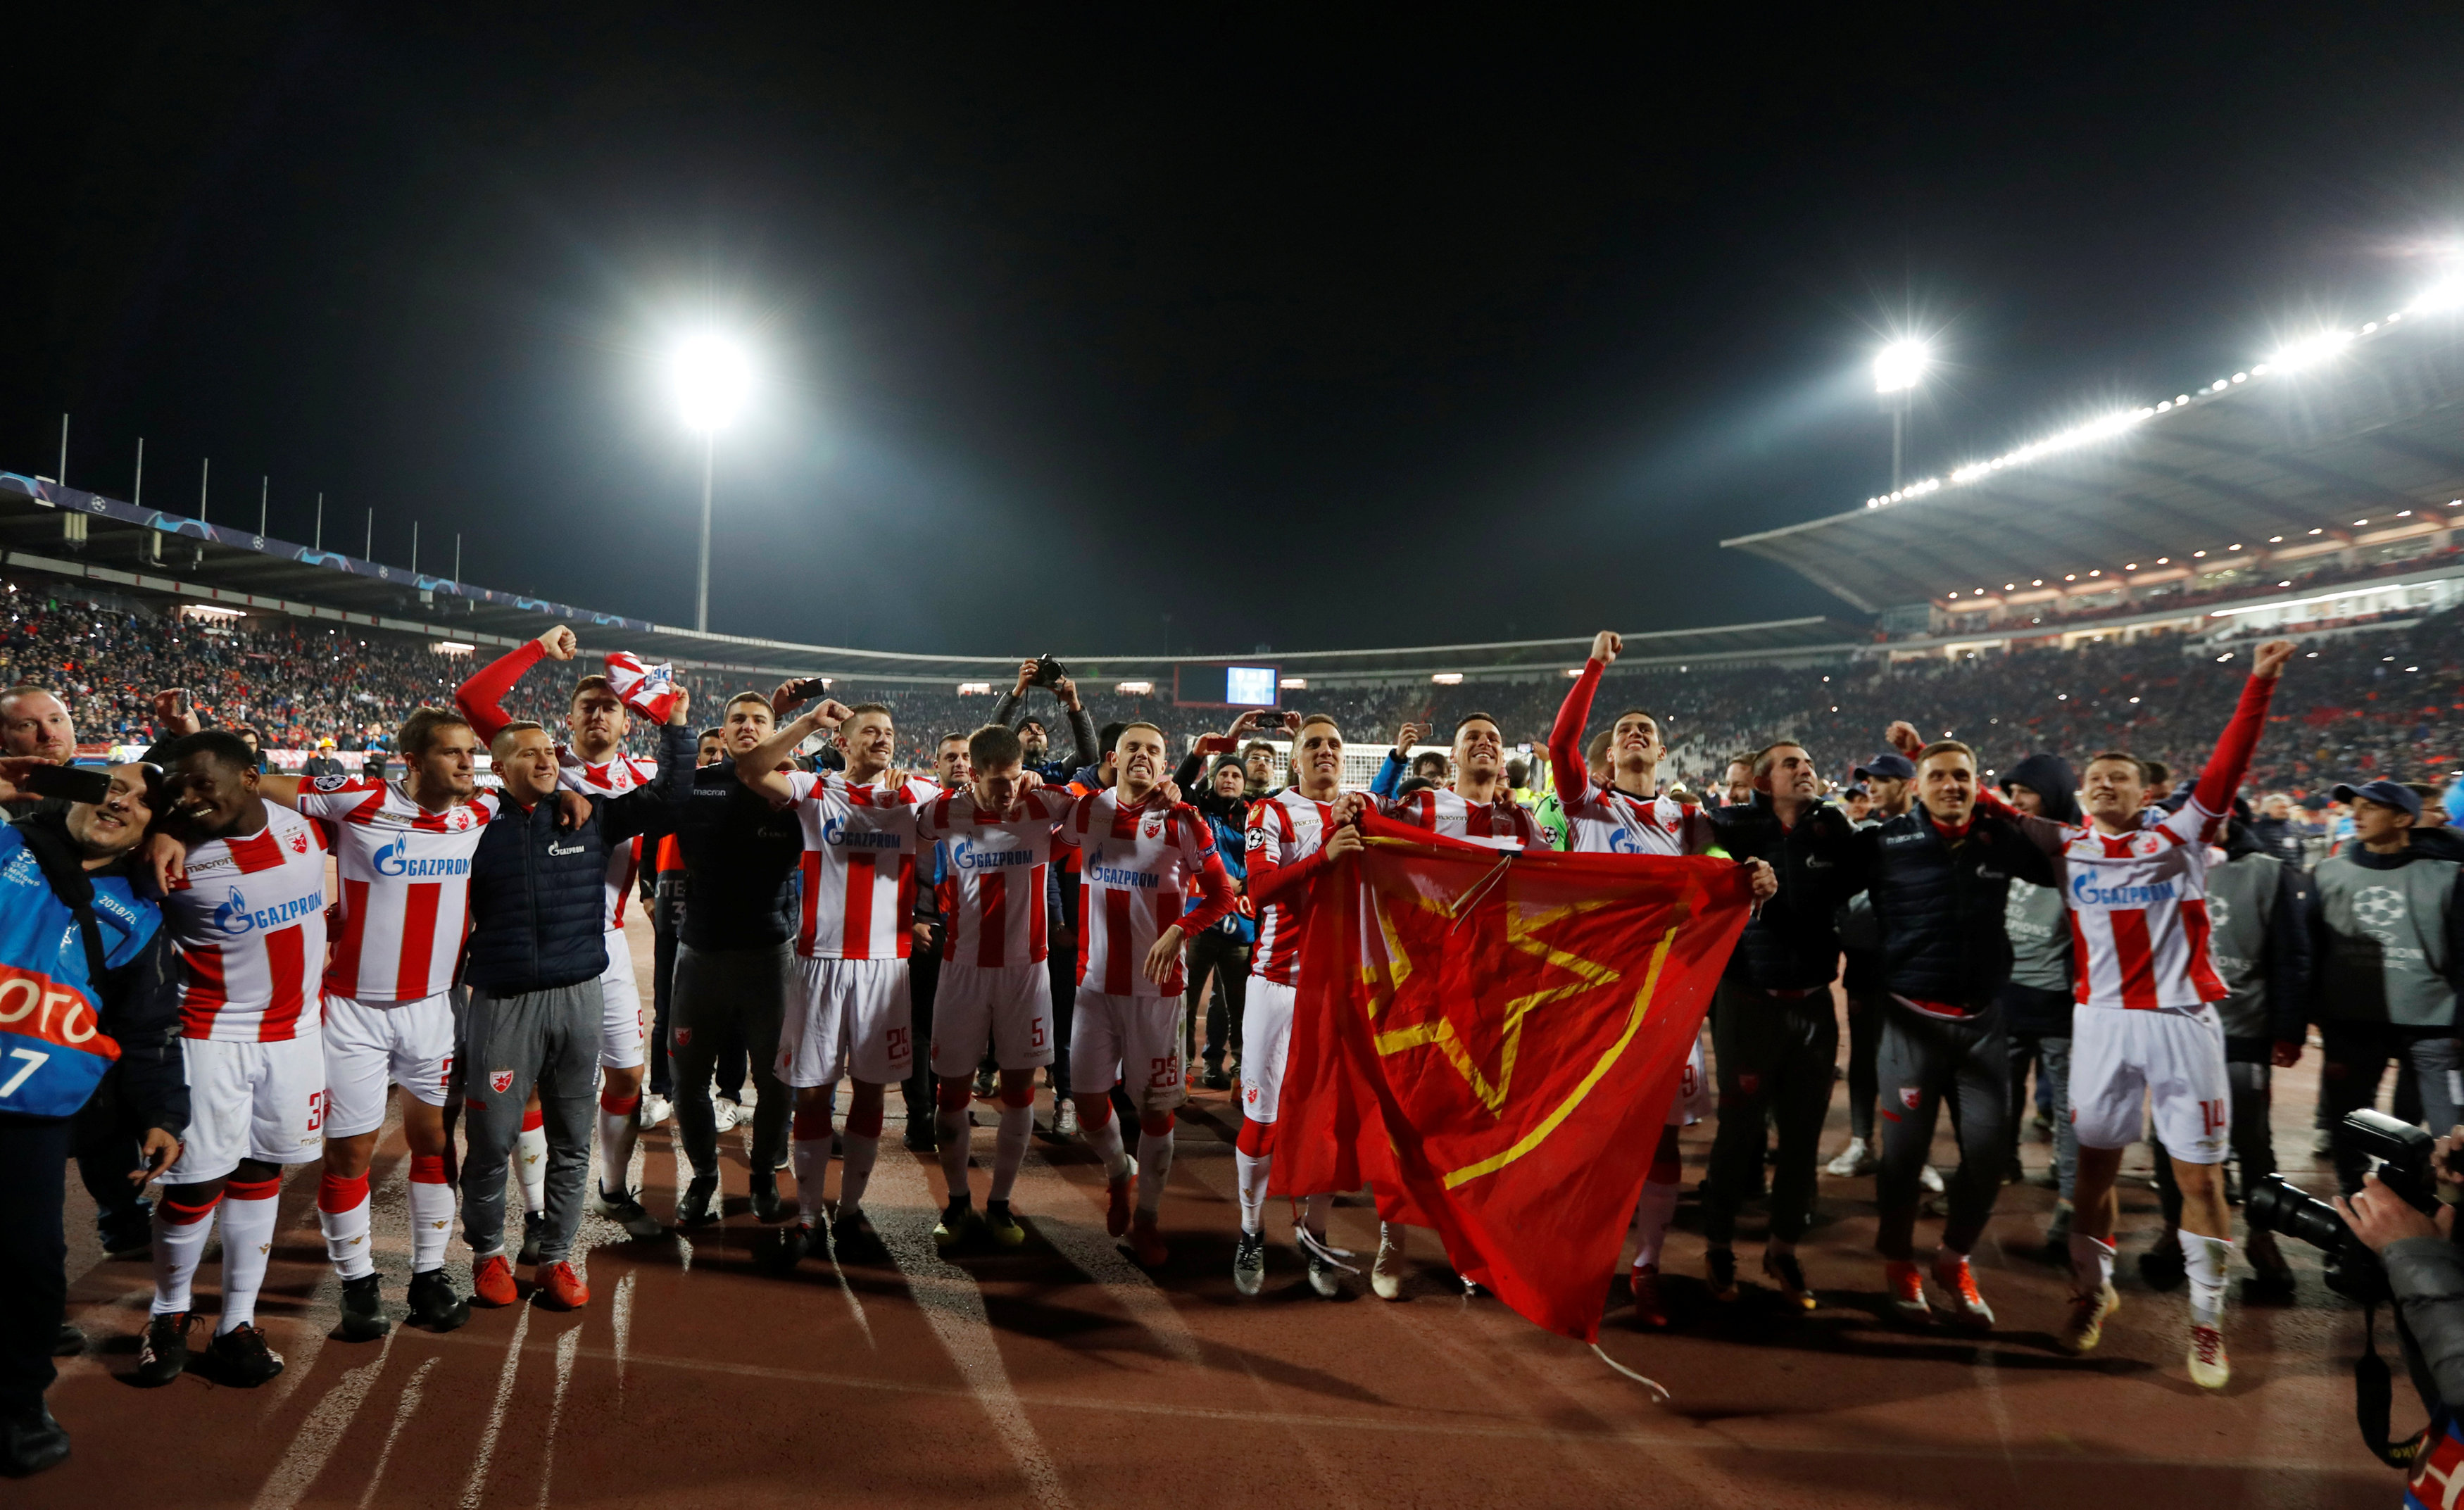 سقوط ليفربول أمام النجم الأحمر في دوري الأبطال بثنائية